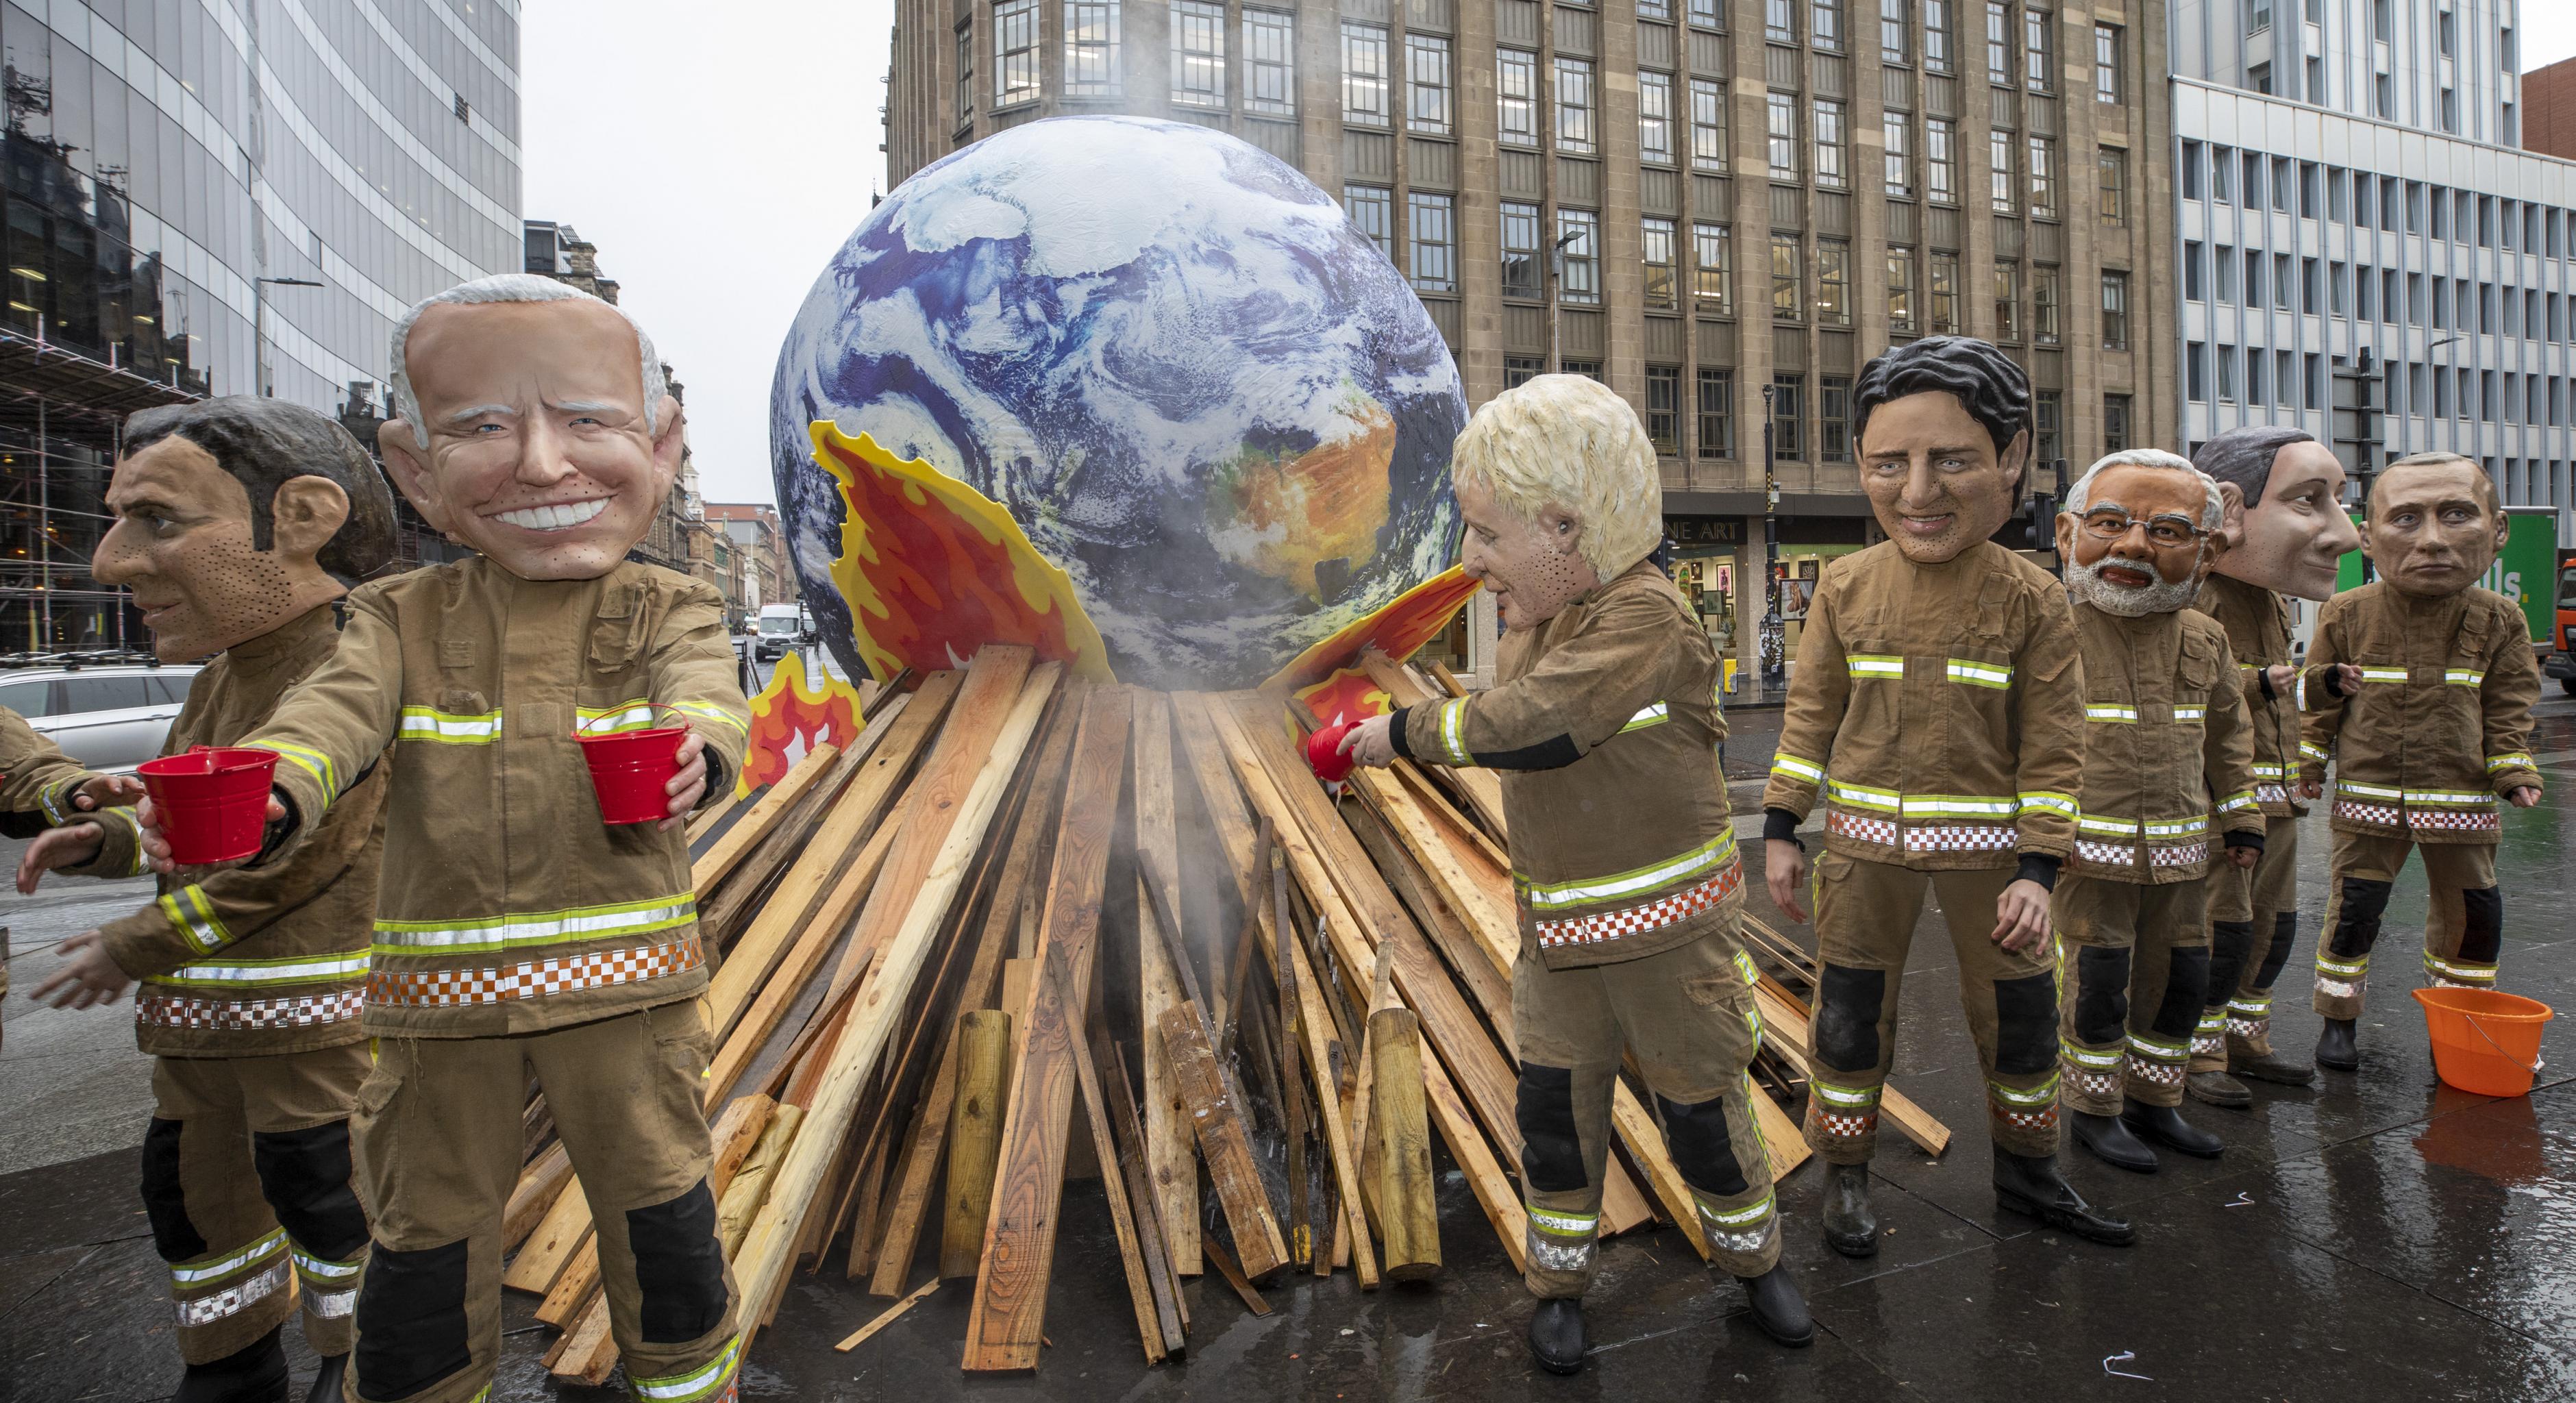 Oxfam-Aktivist*innen posieren mit überdemensionalen Pappmasche-Köpfen der mächtigsten Regierungspersonen und als Feuerwehrmenschen verkleidet bei der COP26 in Glasgow. Sie stehen vor einer brennenden Erdkugel und versuchen sie erfolglos zu löschen.